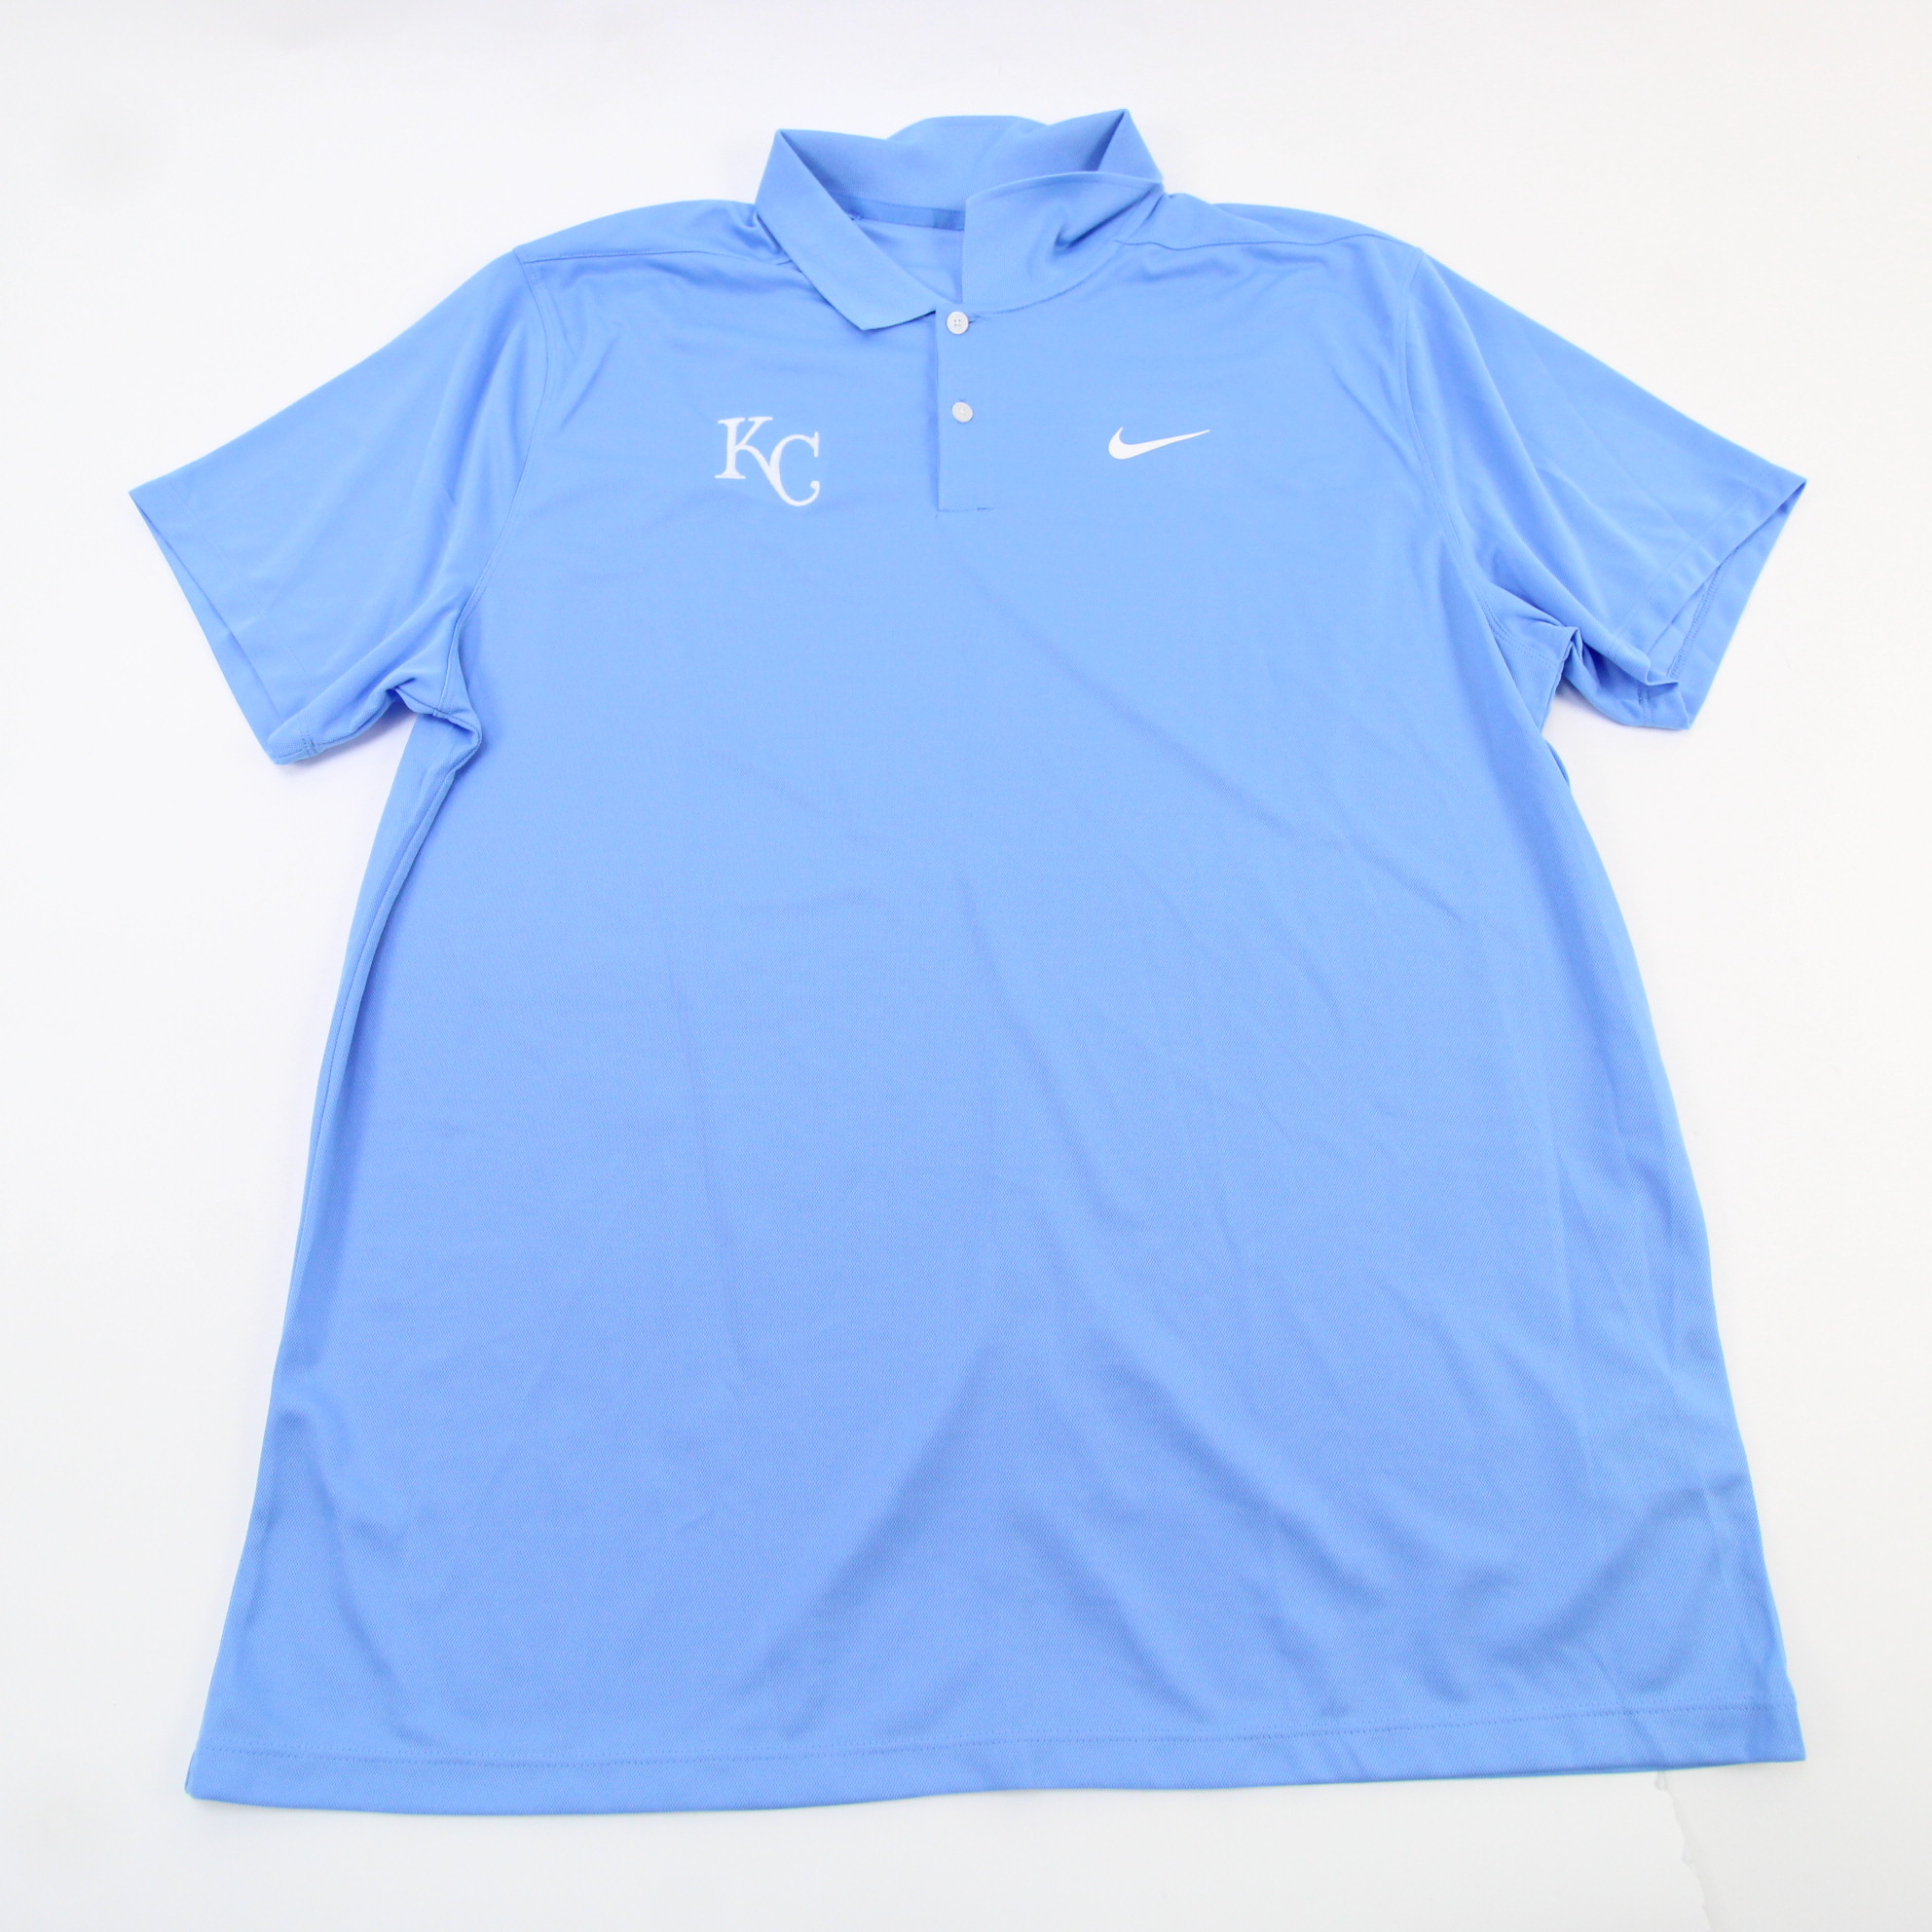 Kansas City Royals Nike Dri-Fit Polo Men's Light Blue New